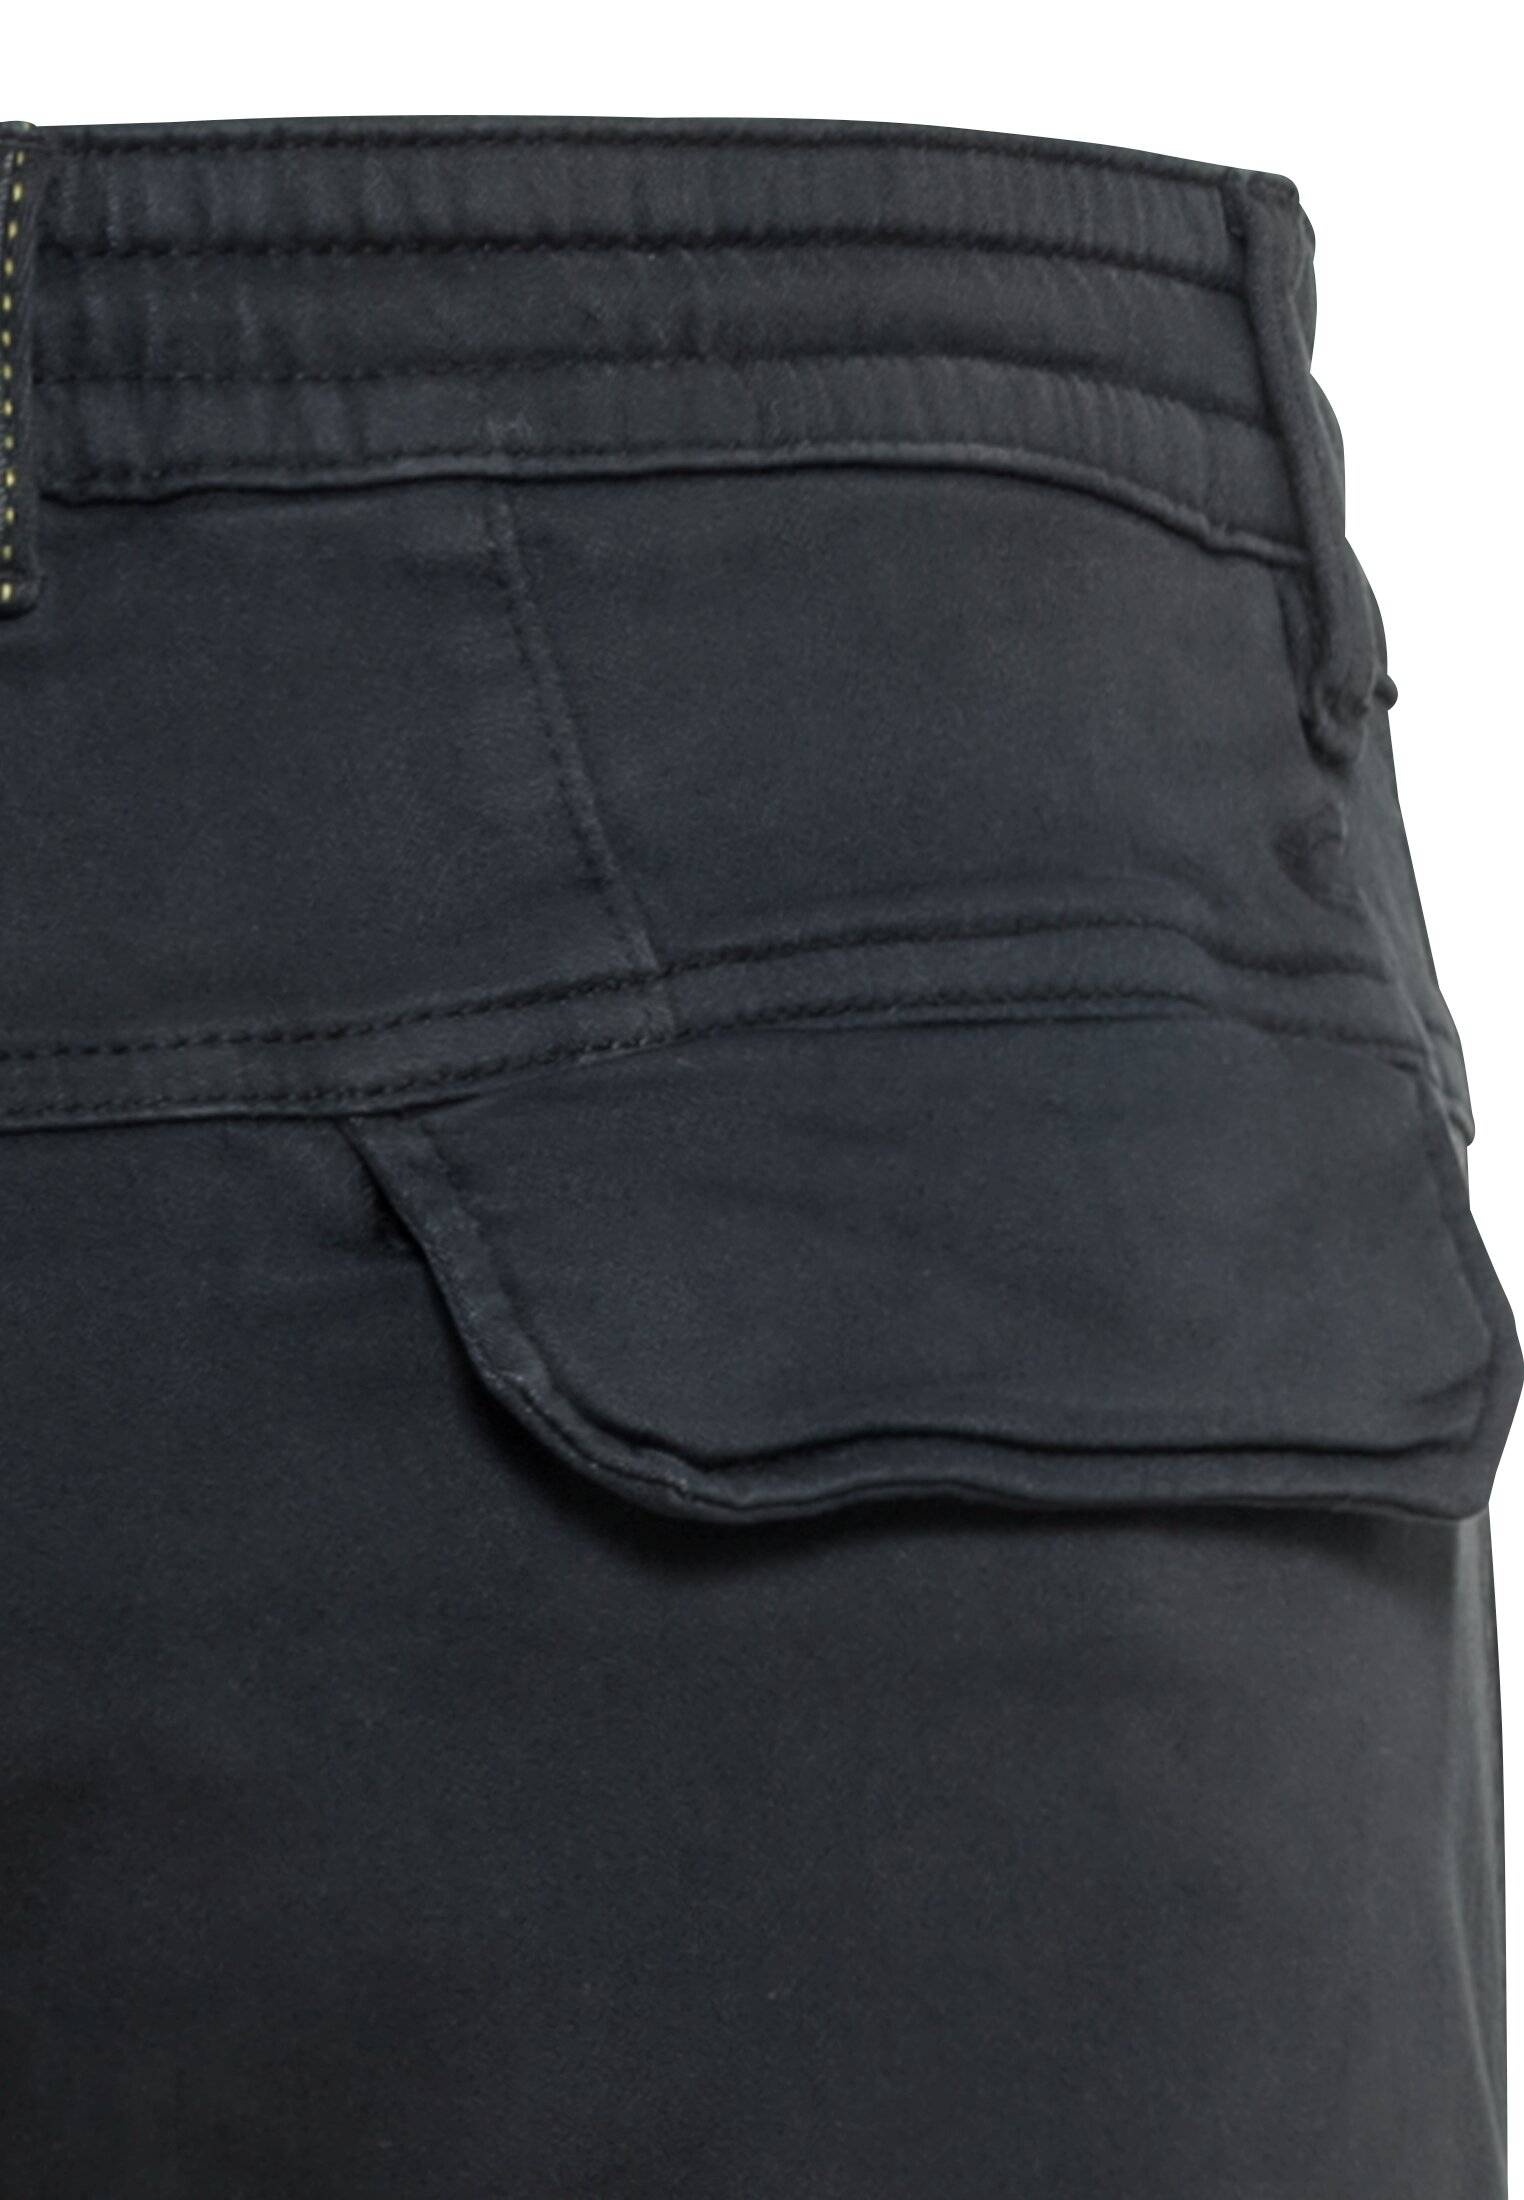 Мужские брюки Camel Active, серые, цвет серый, размер 40 - фото 4